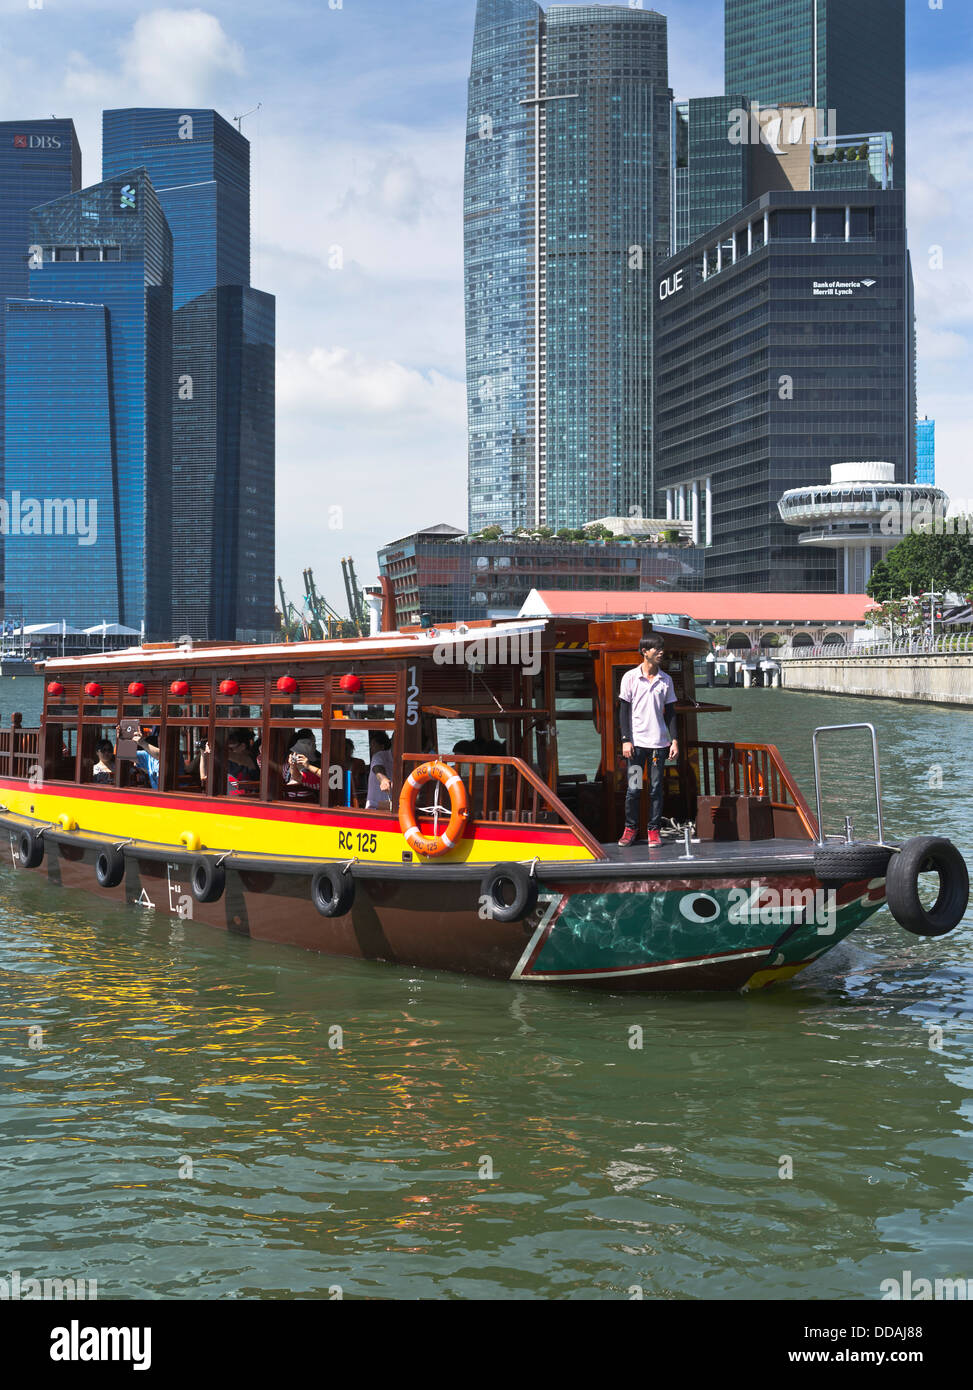 dh Marine Bay CENTRE-VILLE DE SINGAPOUR BUMBOAT croisière tours Singapour bateau-taxi eau gratte-ciel bateau de rivière Banque D'Images